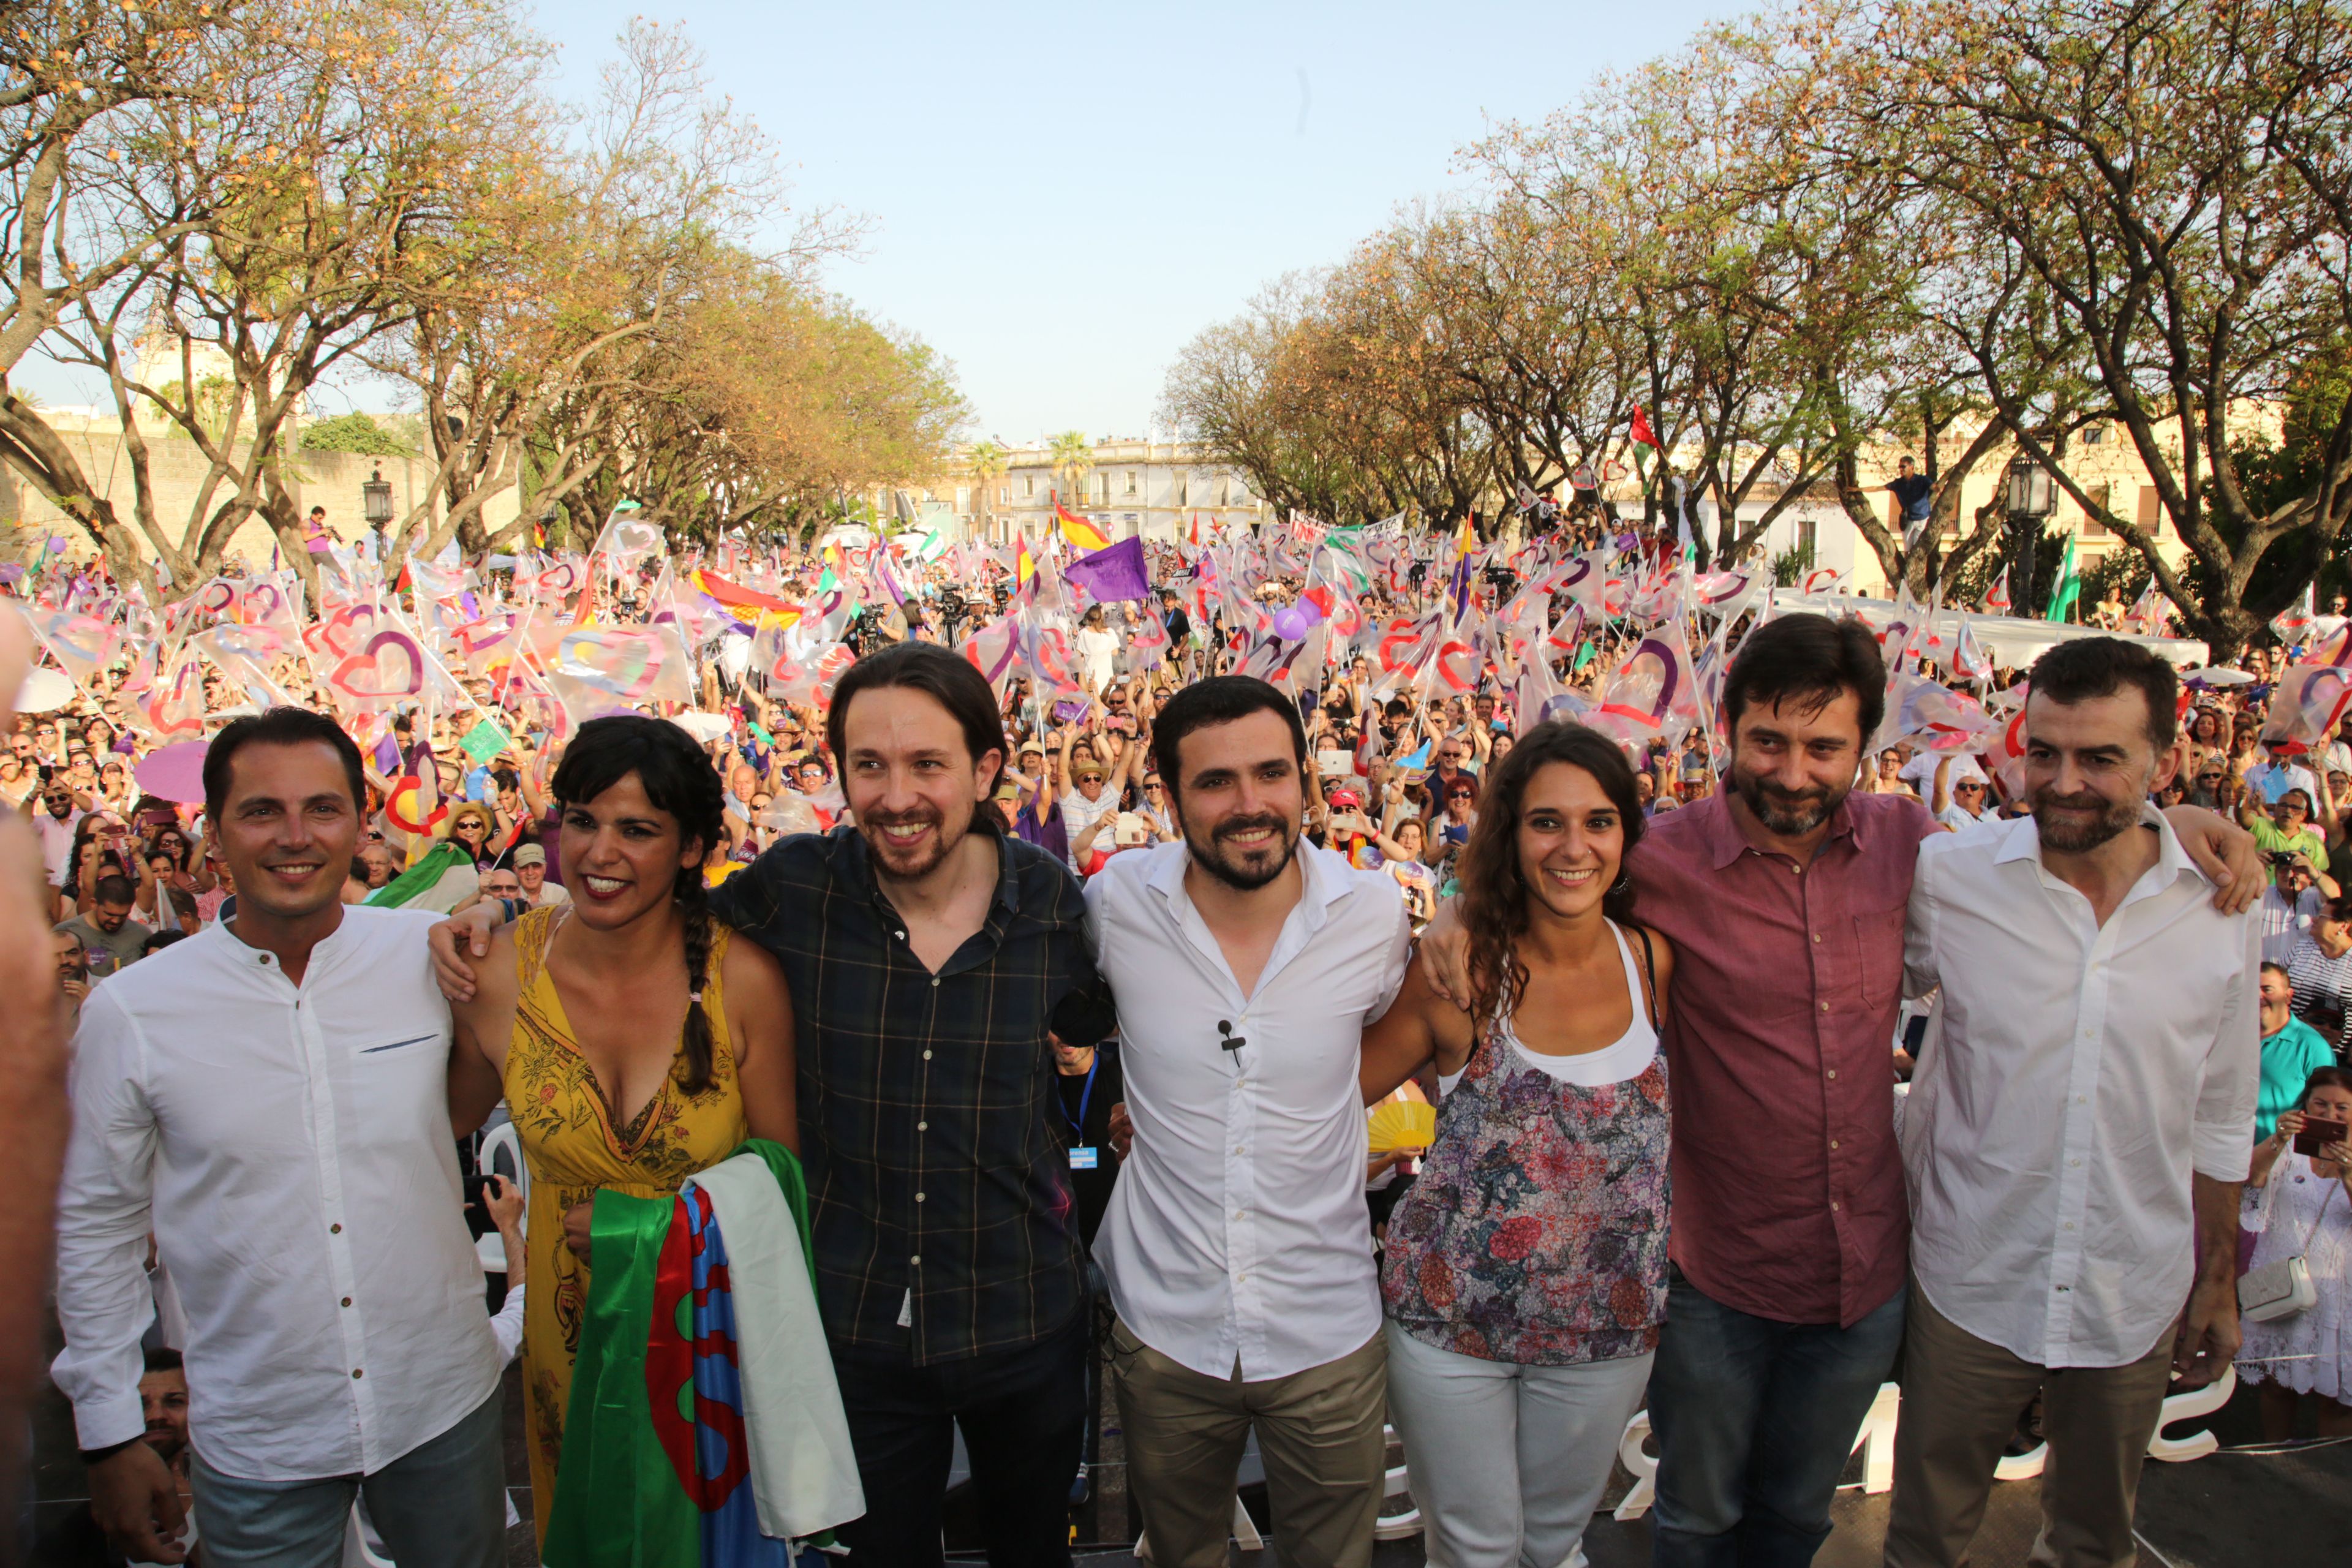 Mitin de Unidos Podemos en Jerez, con Pablo Iglesias y Alberto Garzón en junio de 2016. FOTO: JUAN CARLOS TORO